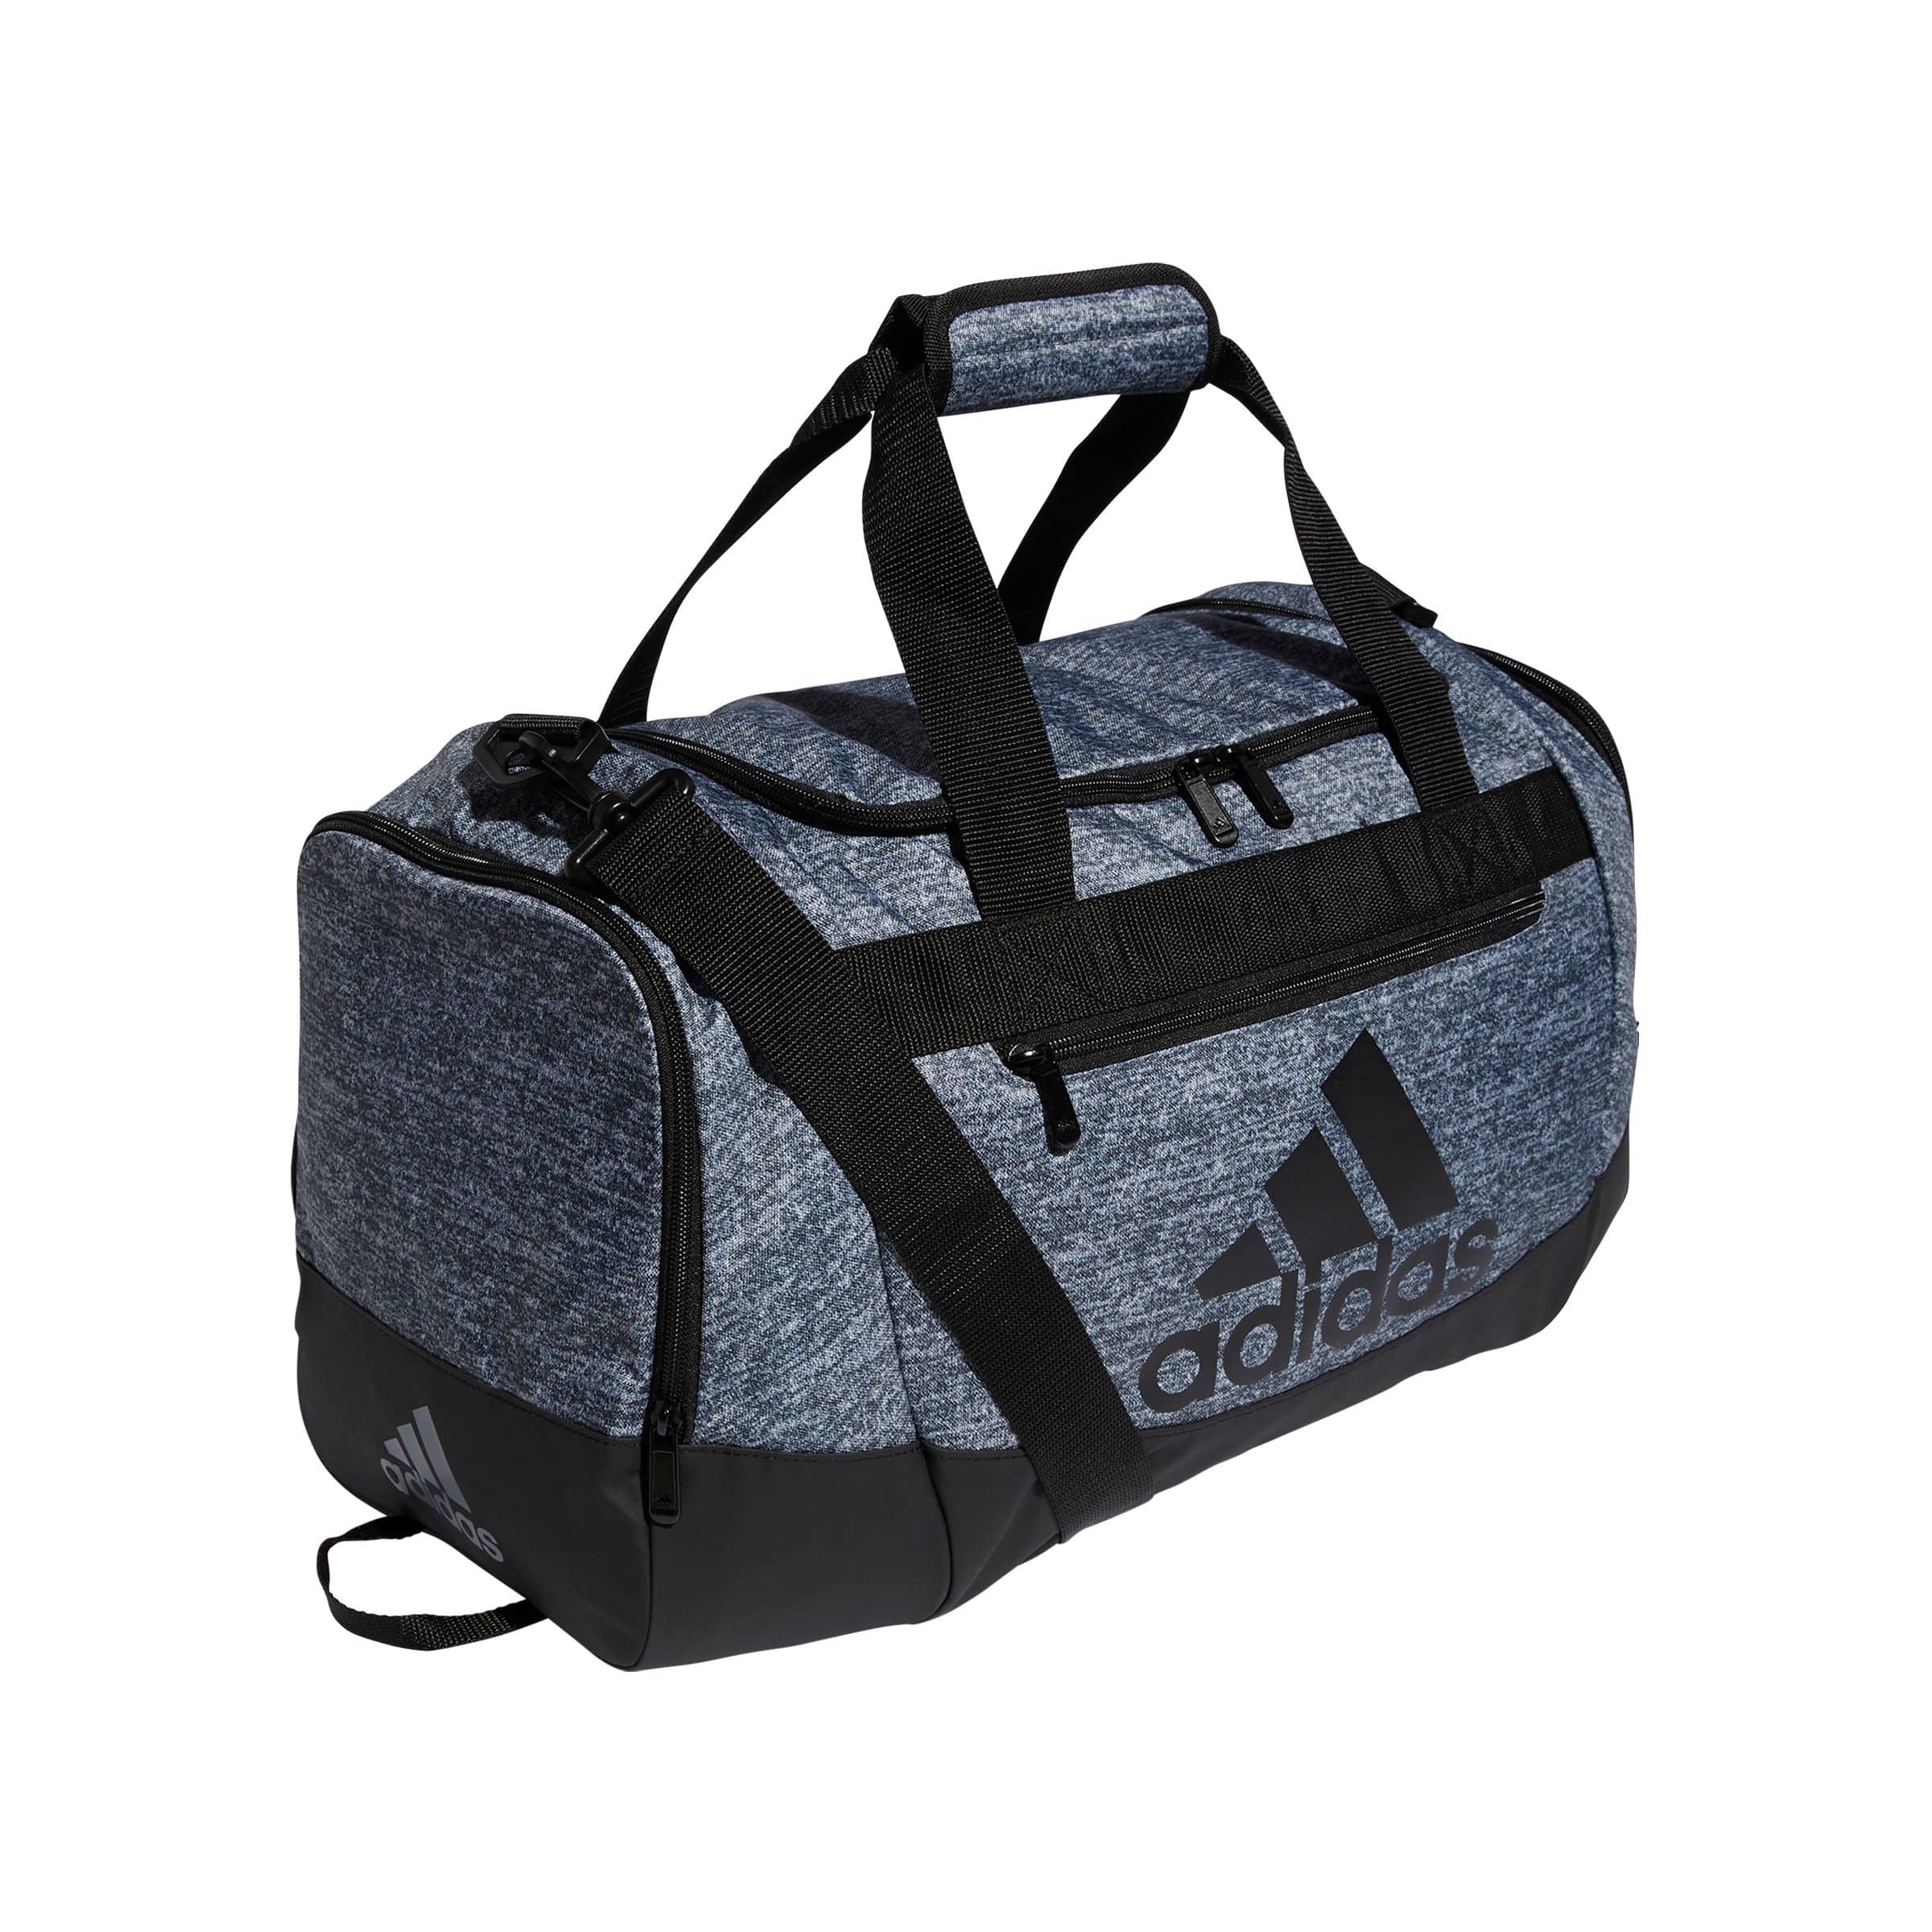 Best Gym Duffel Bag? Nike Brasilia Duffel Bag Review and Comparison vs  Adidas Defender Duffel Bag 